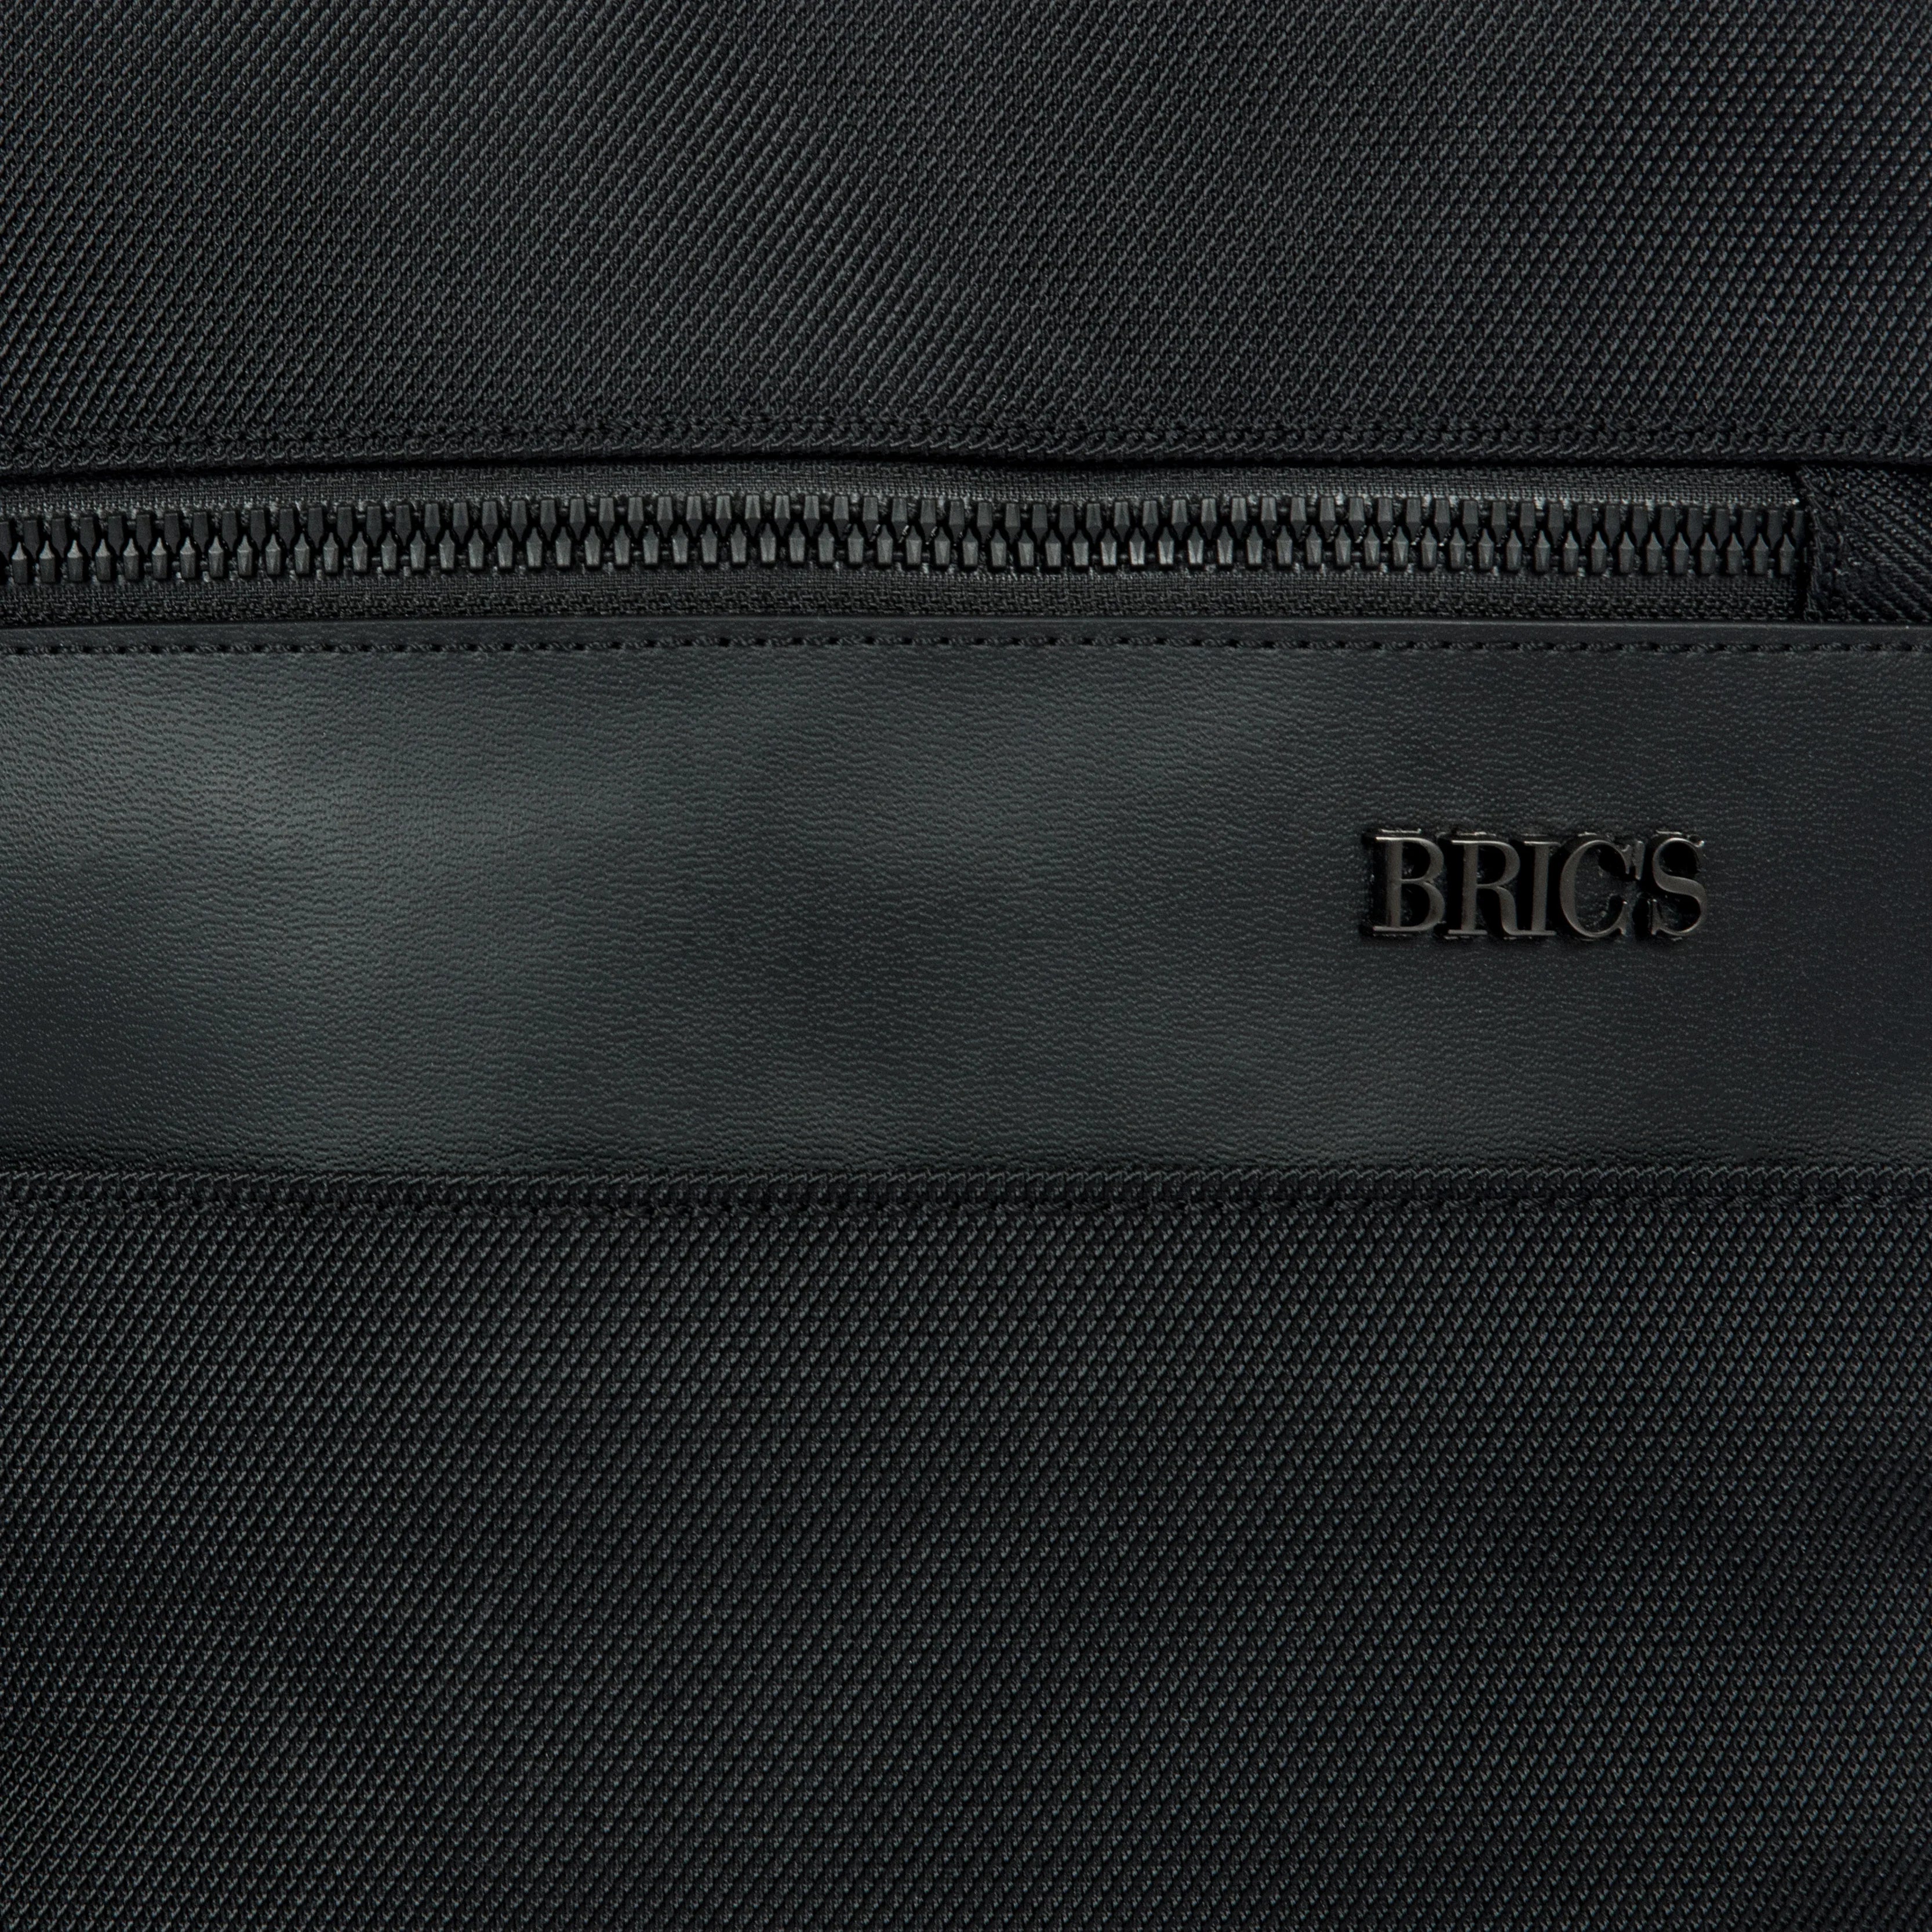 Brics Matera shoulder bag XS 28 cm - Black